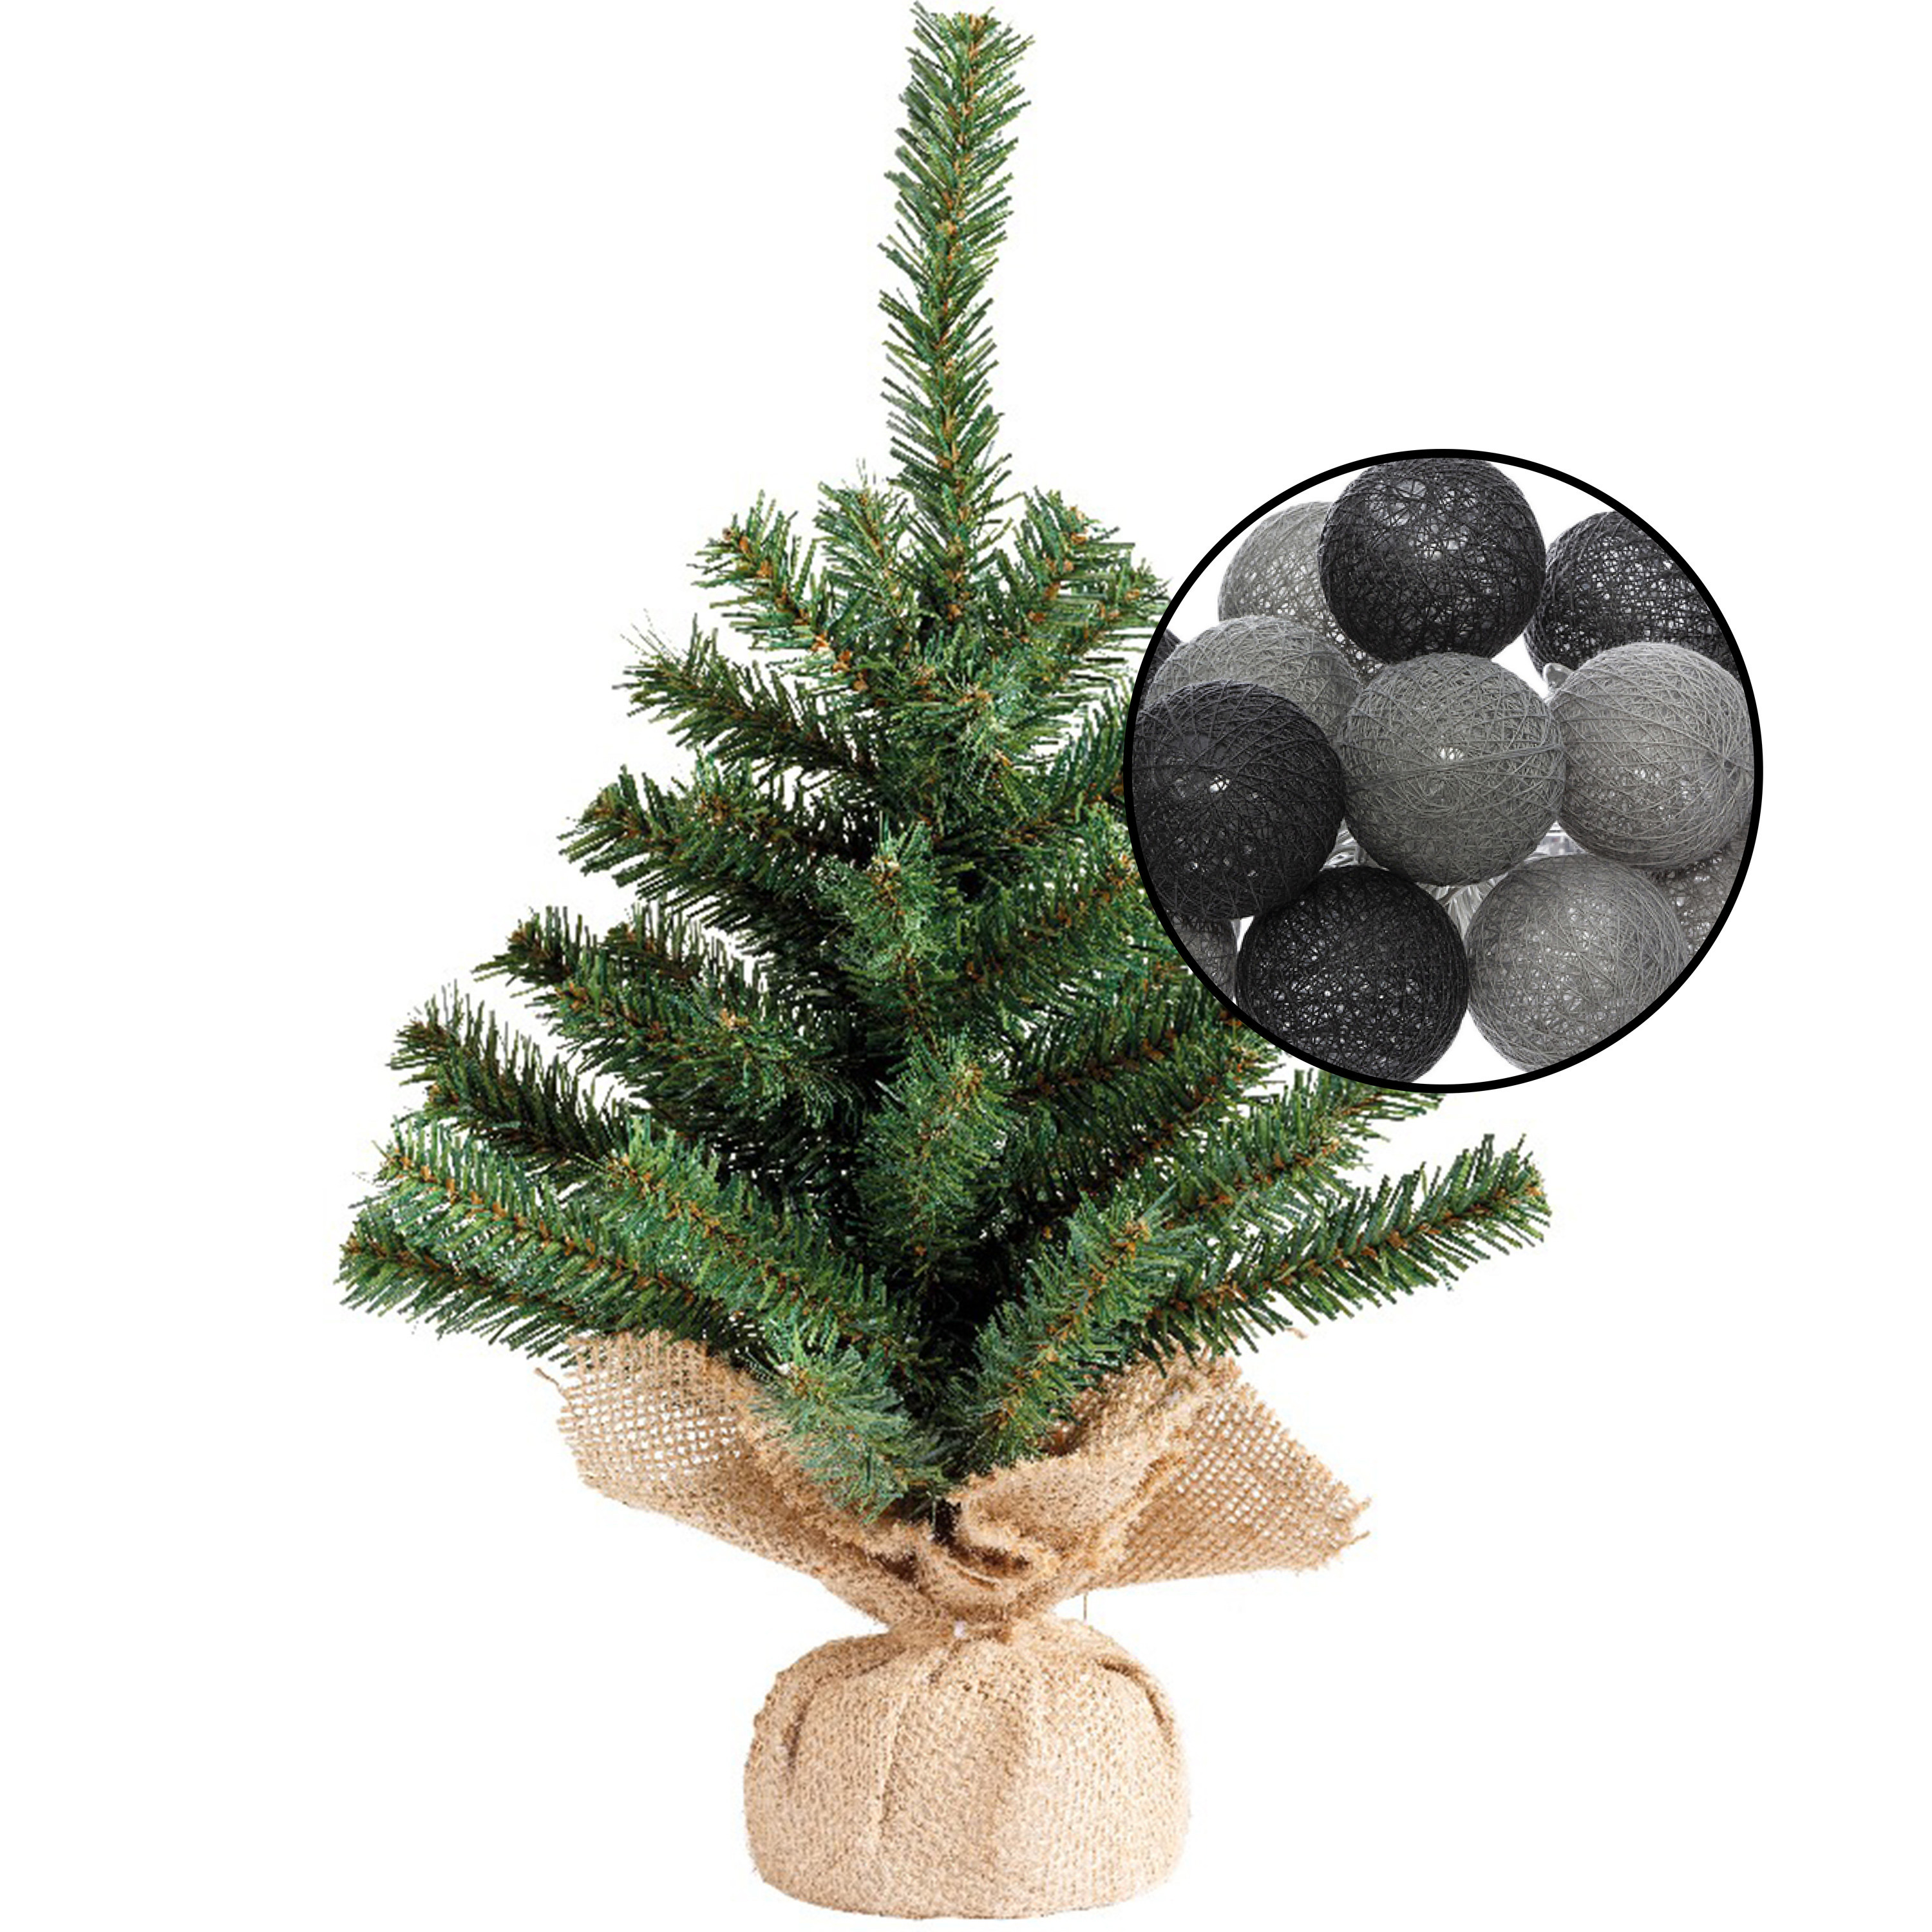 Mini kunst kerstboom groen met verlichting in jute zak H45 cm zwart-grijs